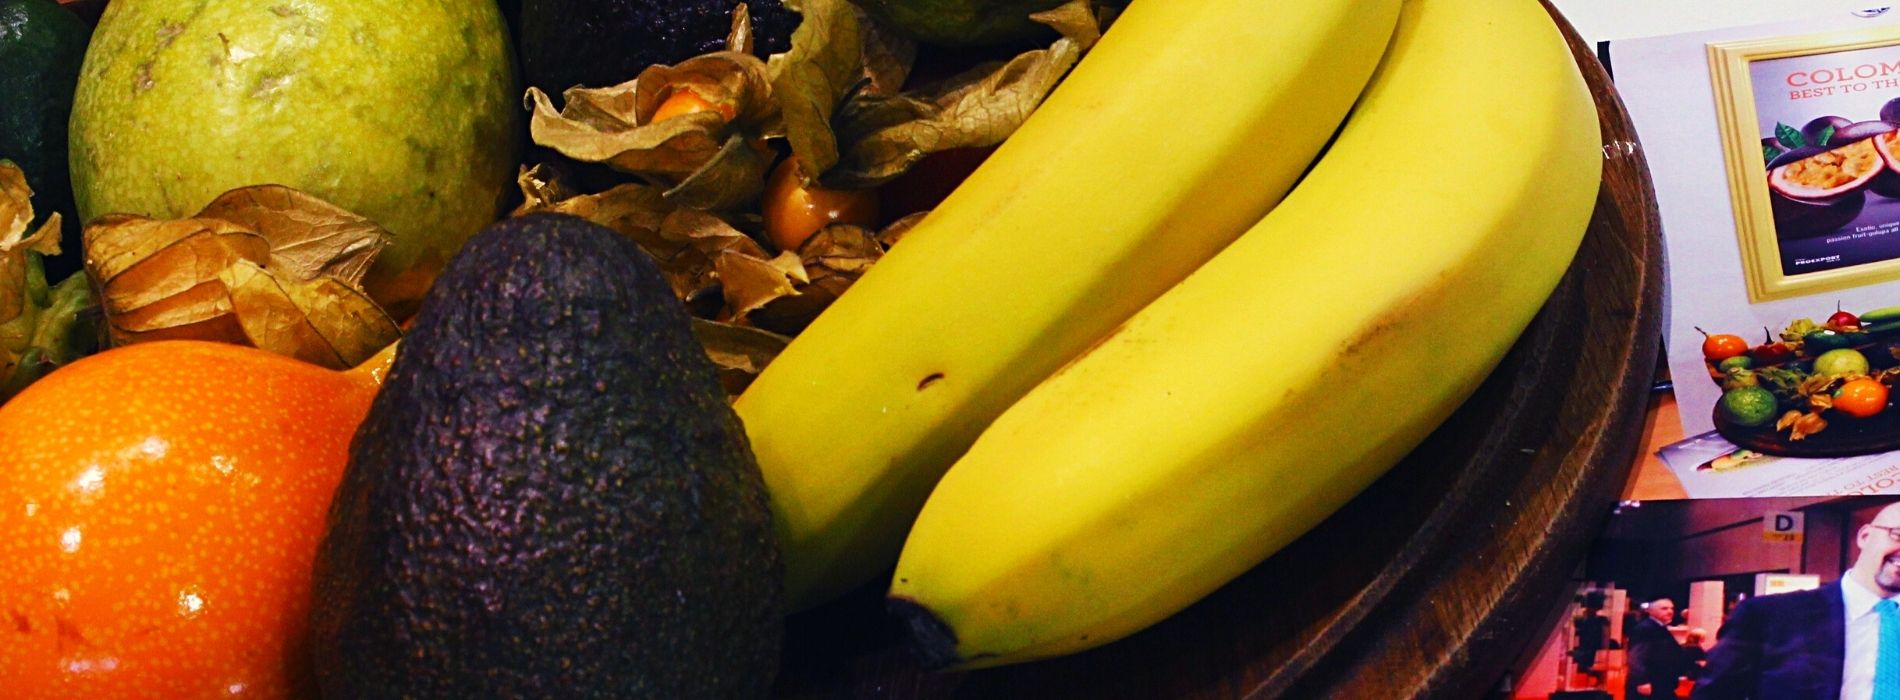 Banano colombiano en la región de Menasa